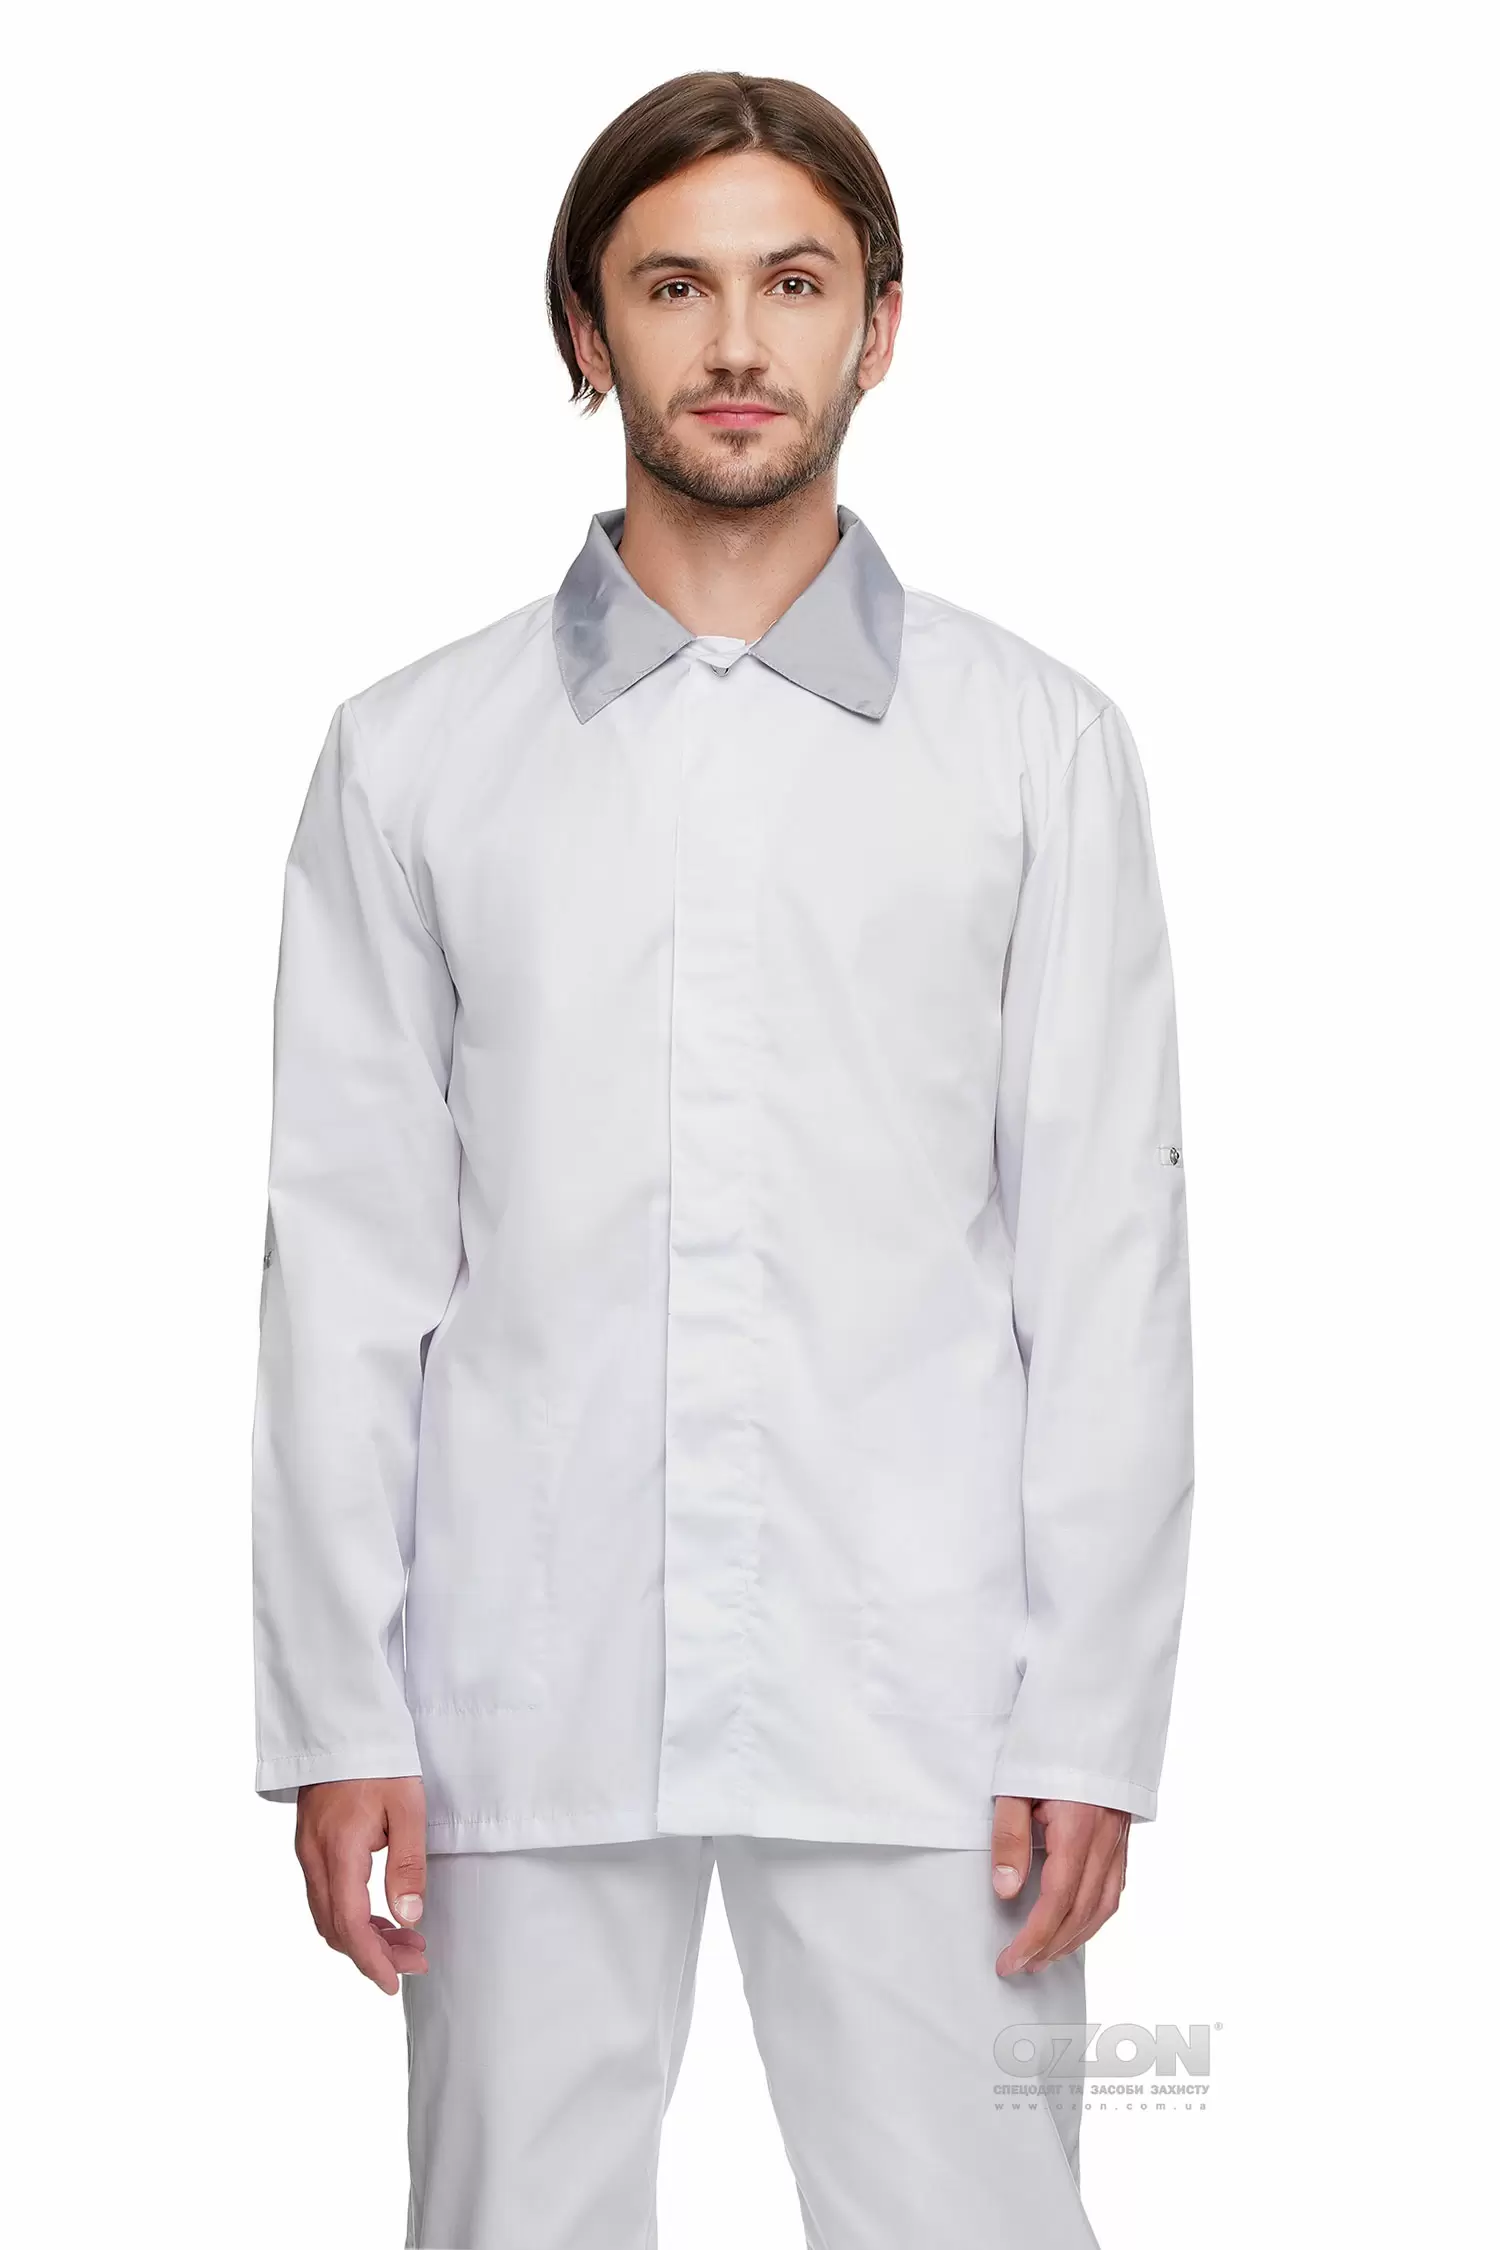 Куртка чоловіча Органік К5, білий - Фото 1